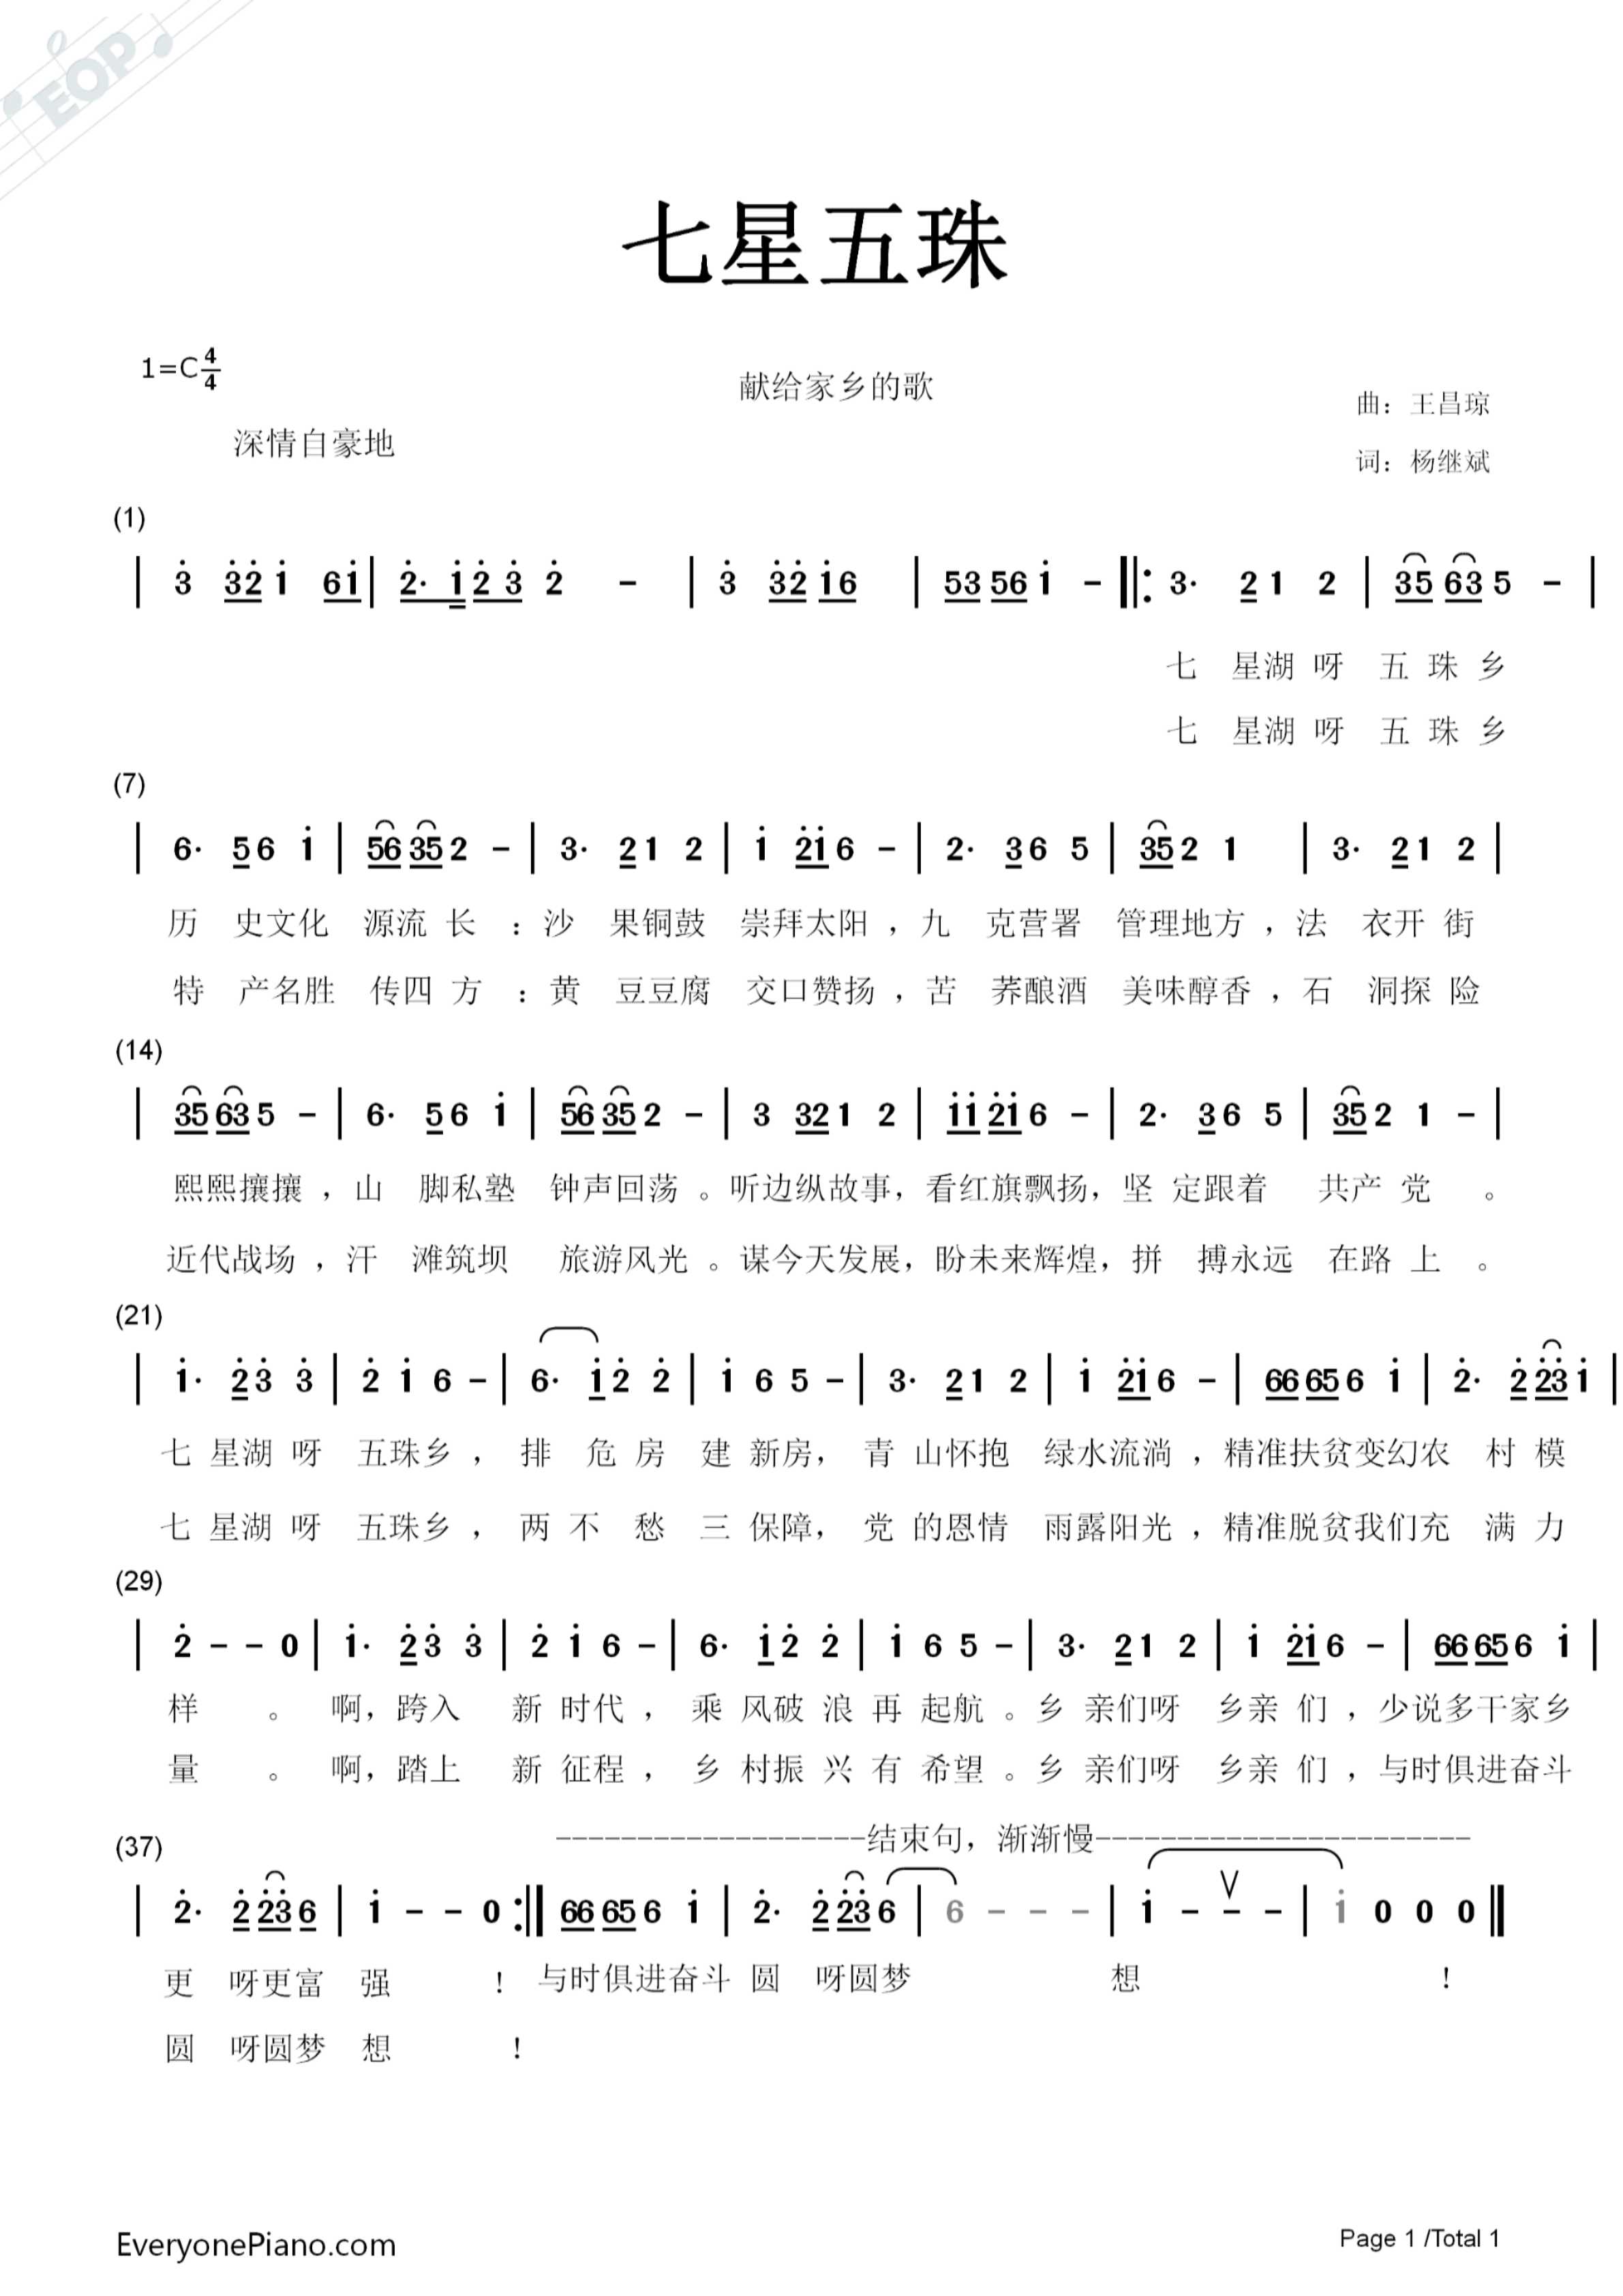 小星星吉他谱(PDF谱,尤克里里,独奏)_群星(Various Artists)